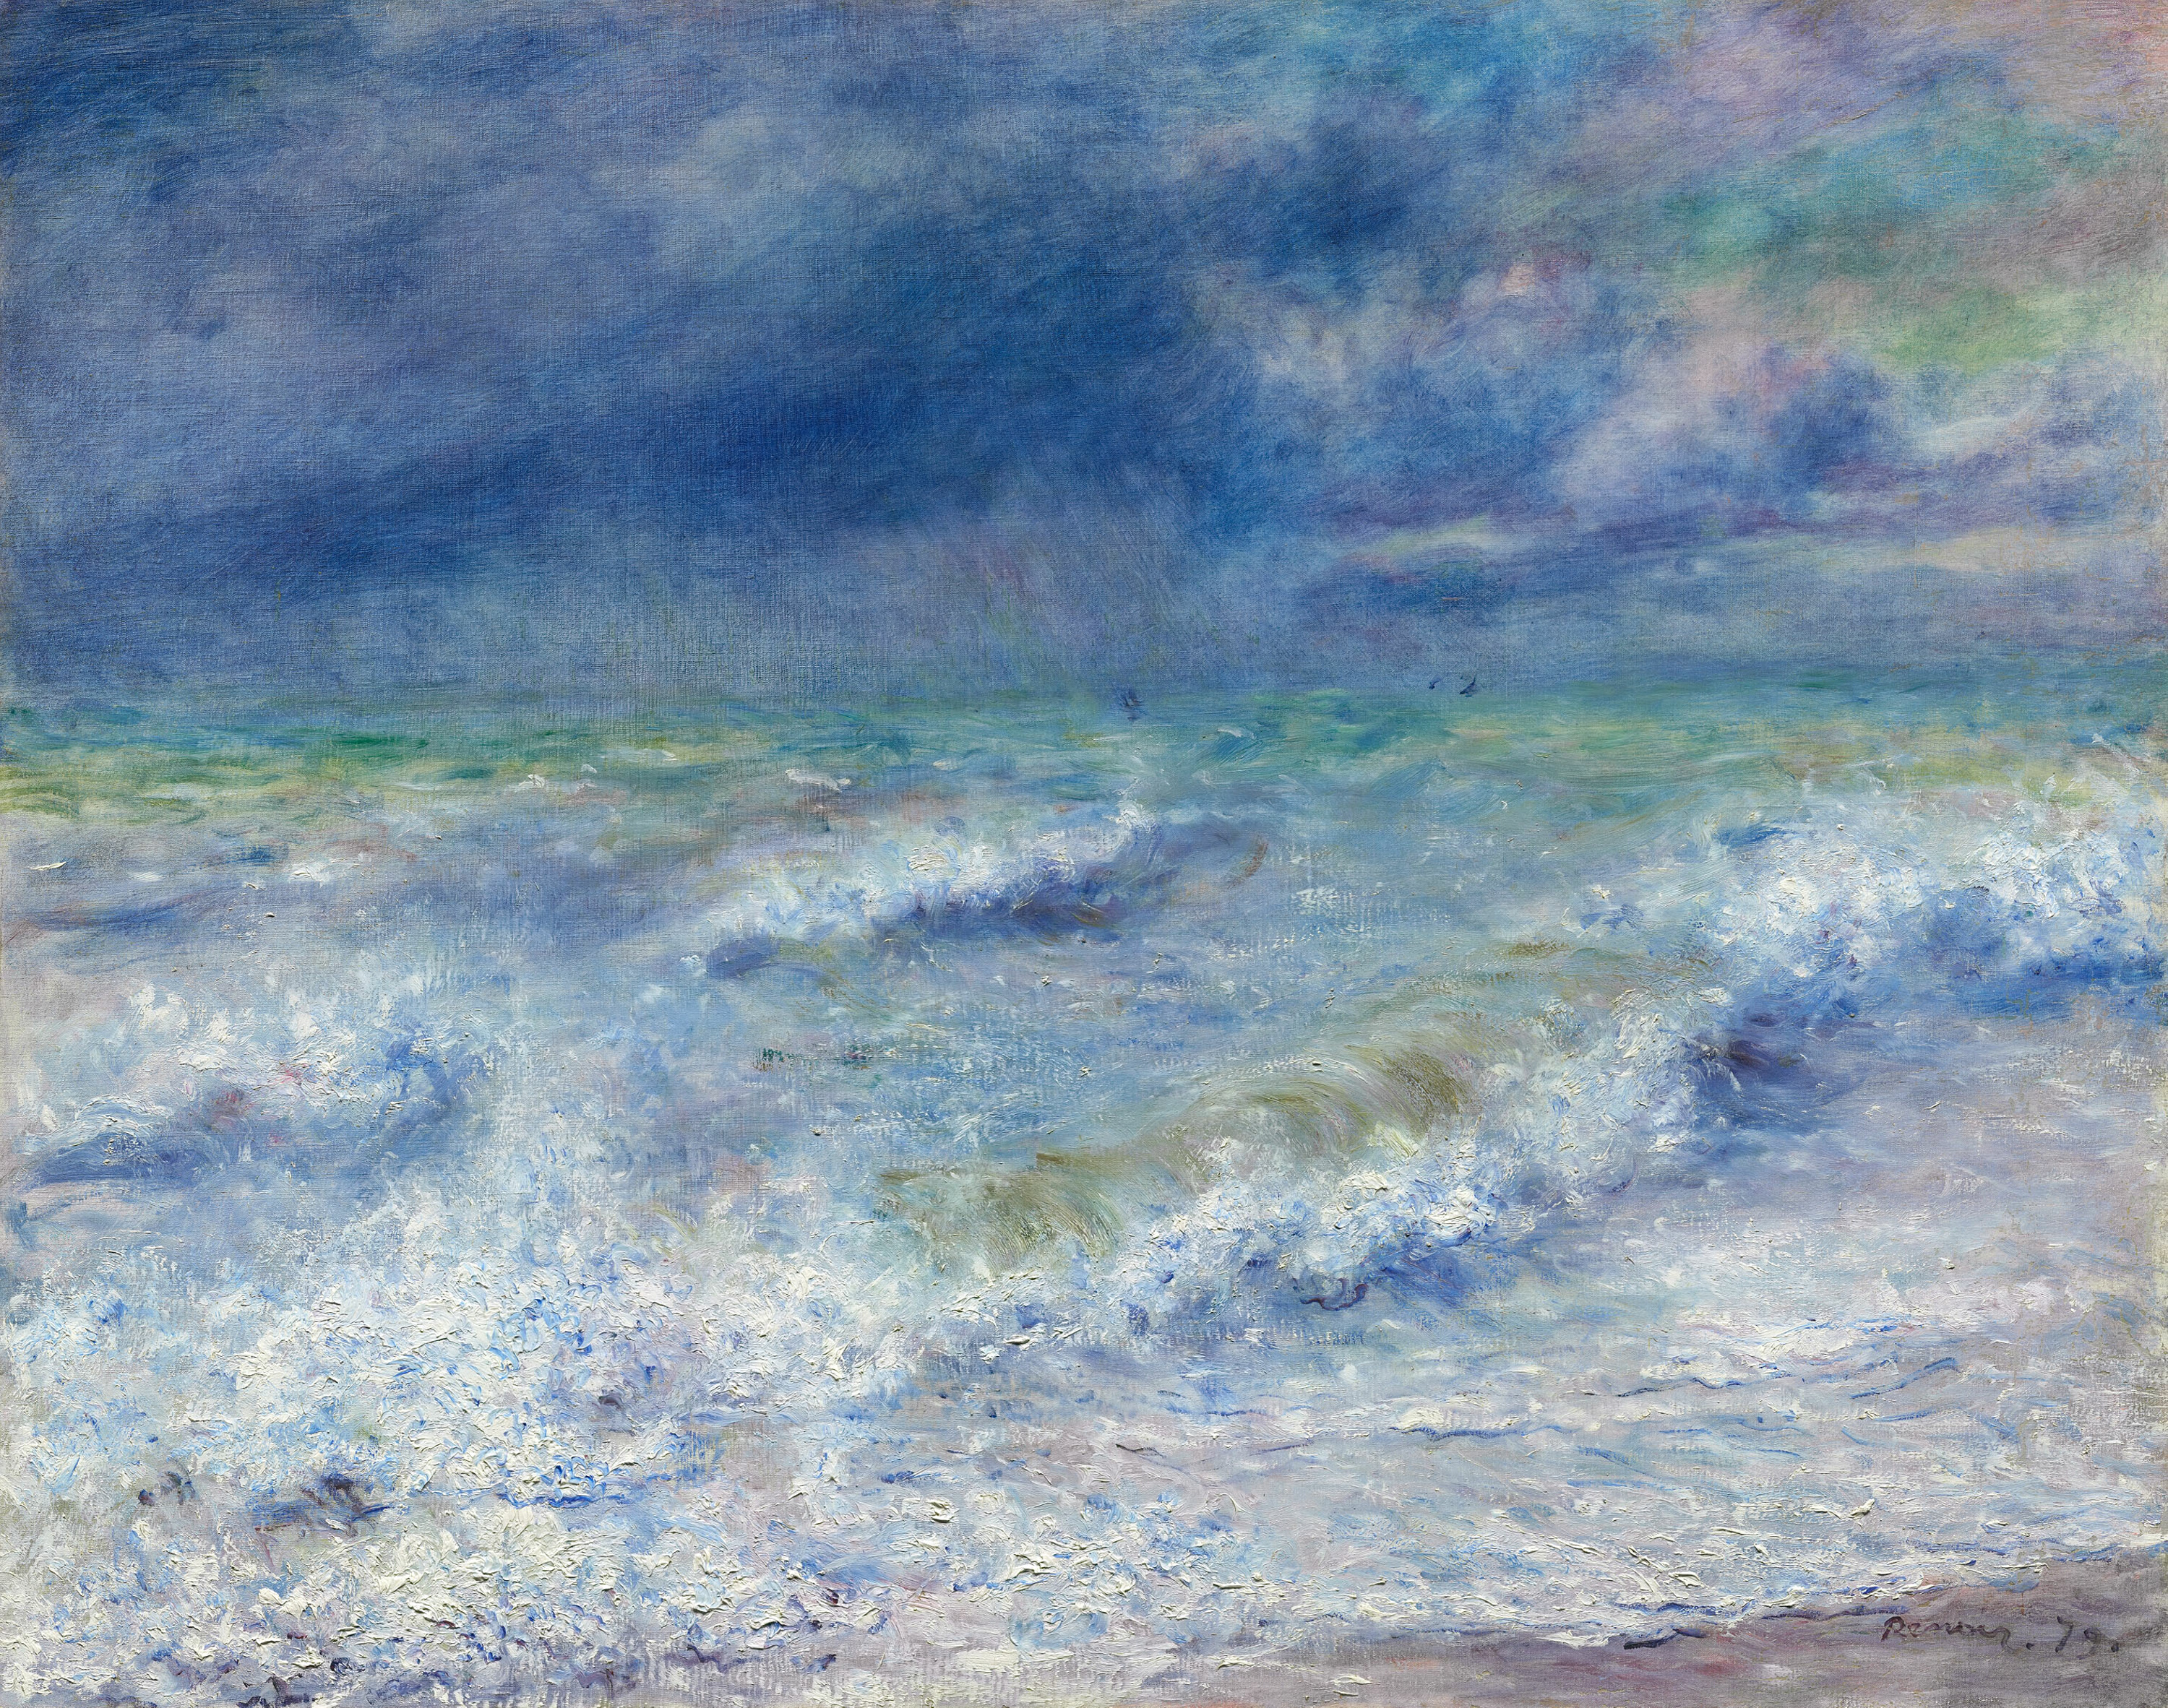 海景 by 皮埃尔-奥古斯特· 雷诺阿 - 1879 - 72.6 × 91.6 cm 芝加哥藝術博物館